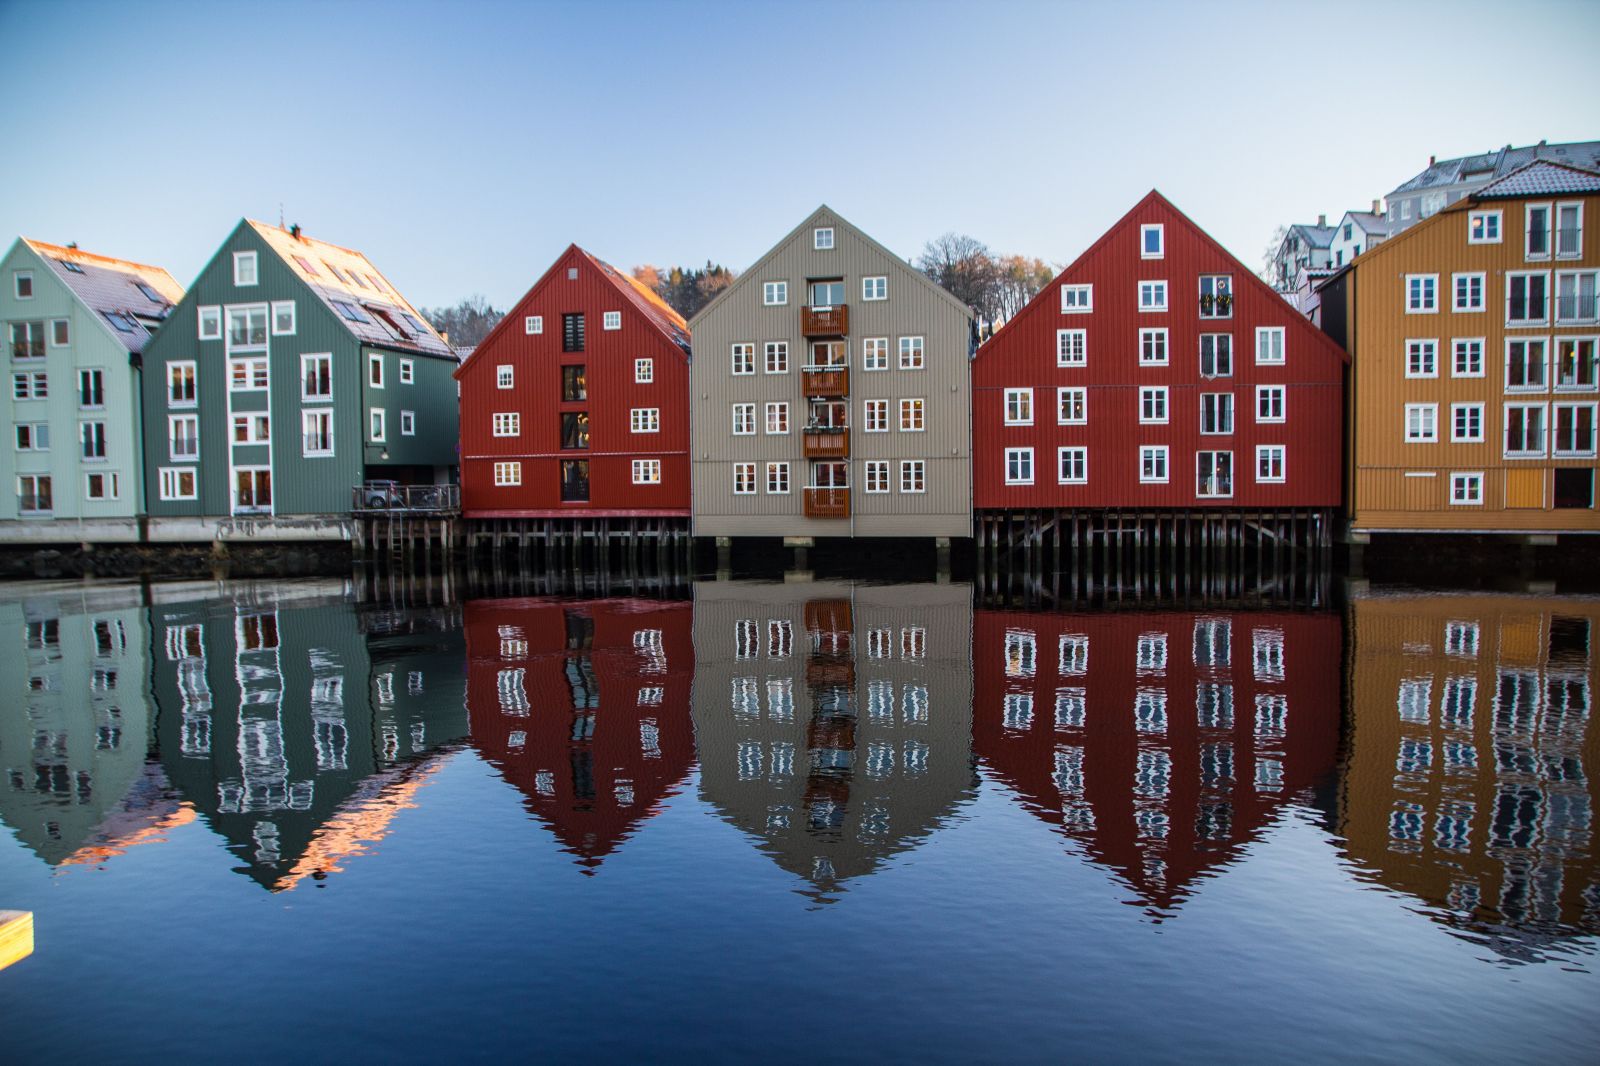 10 fascinujúcich vecí, ktoré si (možno) nevedel o Nórsku